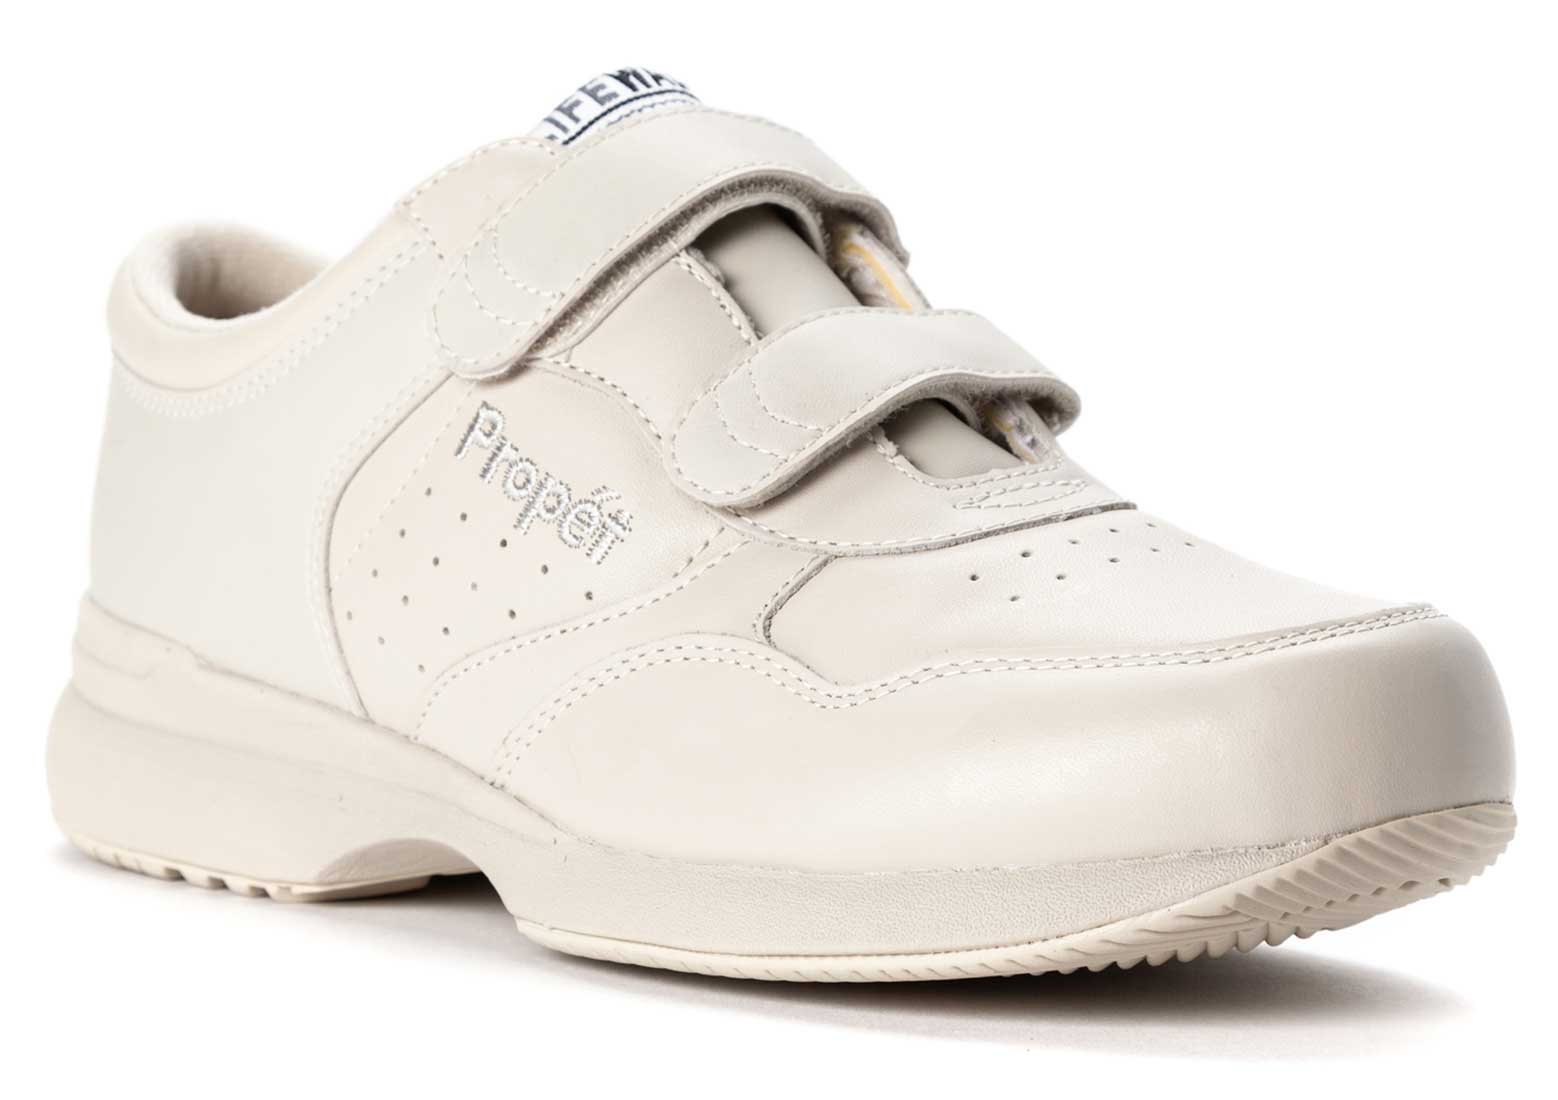 Propet LifeWalker Strap M3705 Athletic Shoes Size 8-10 